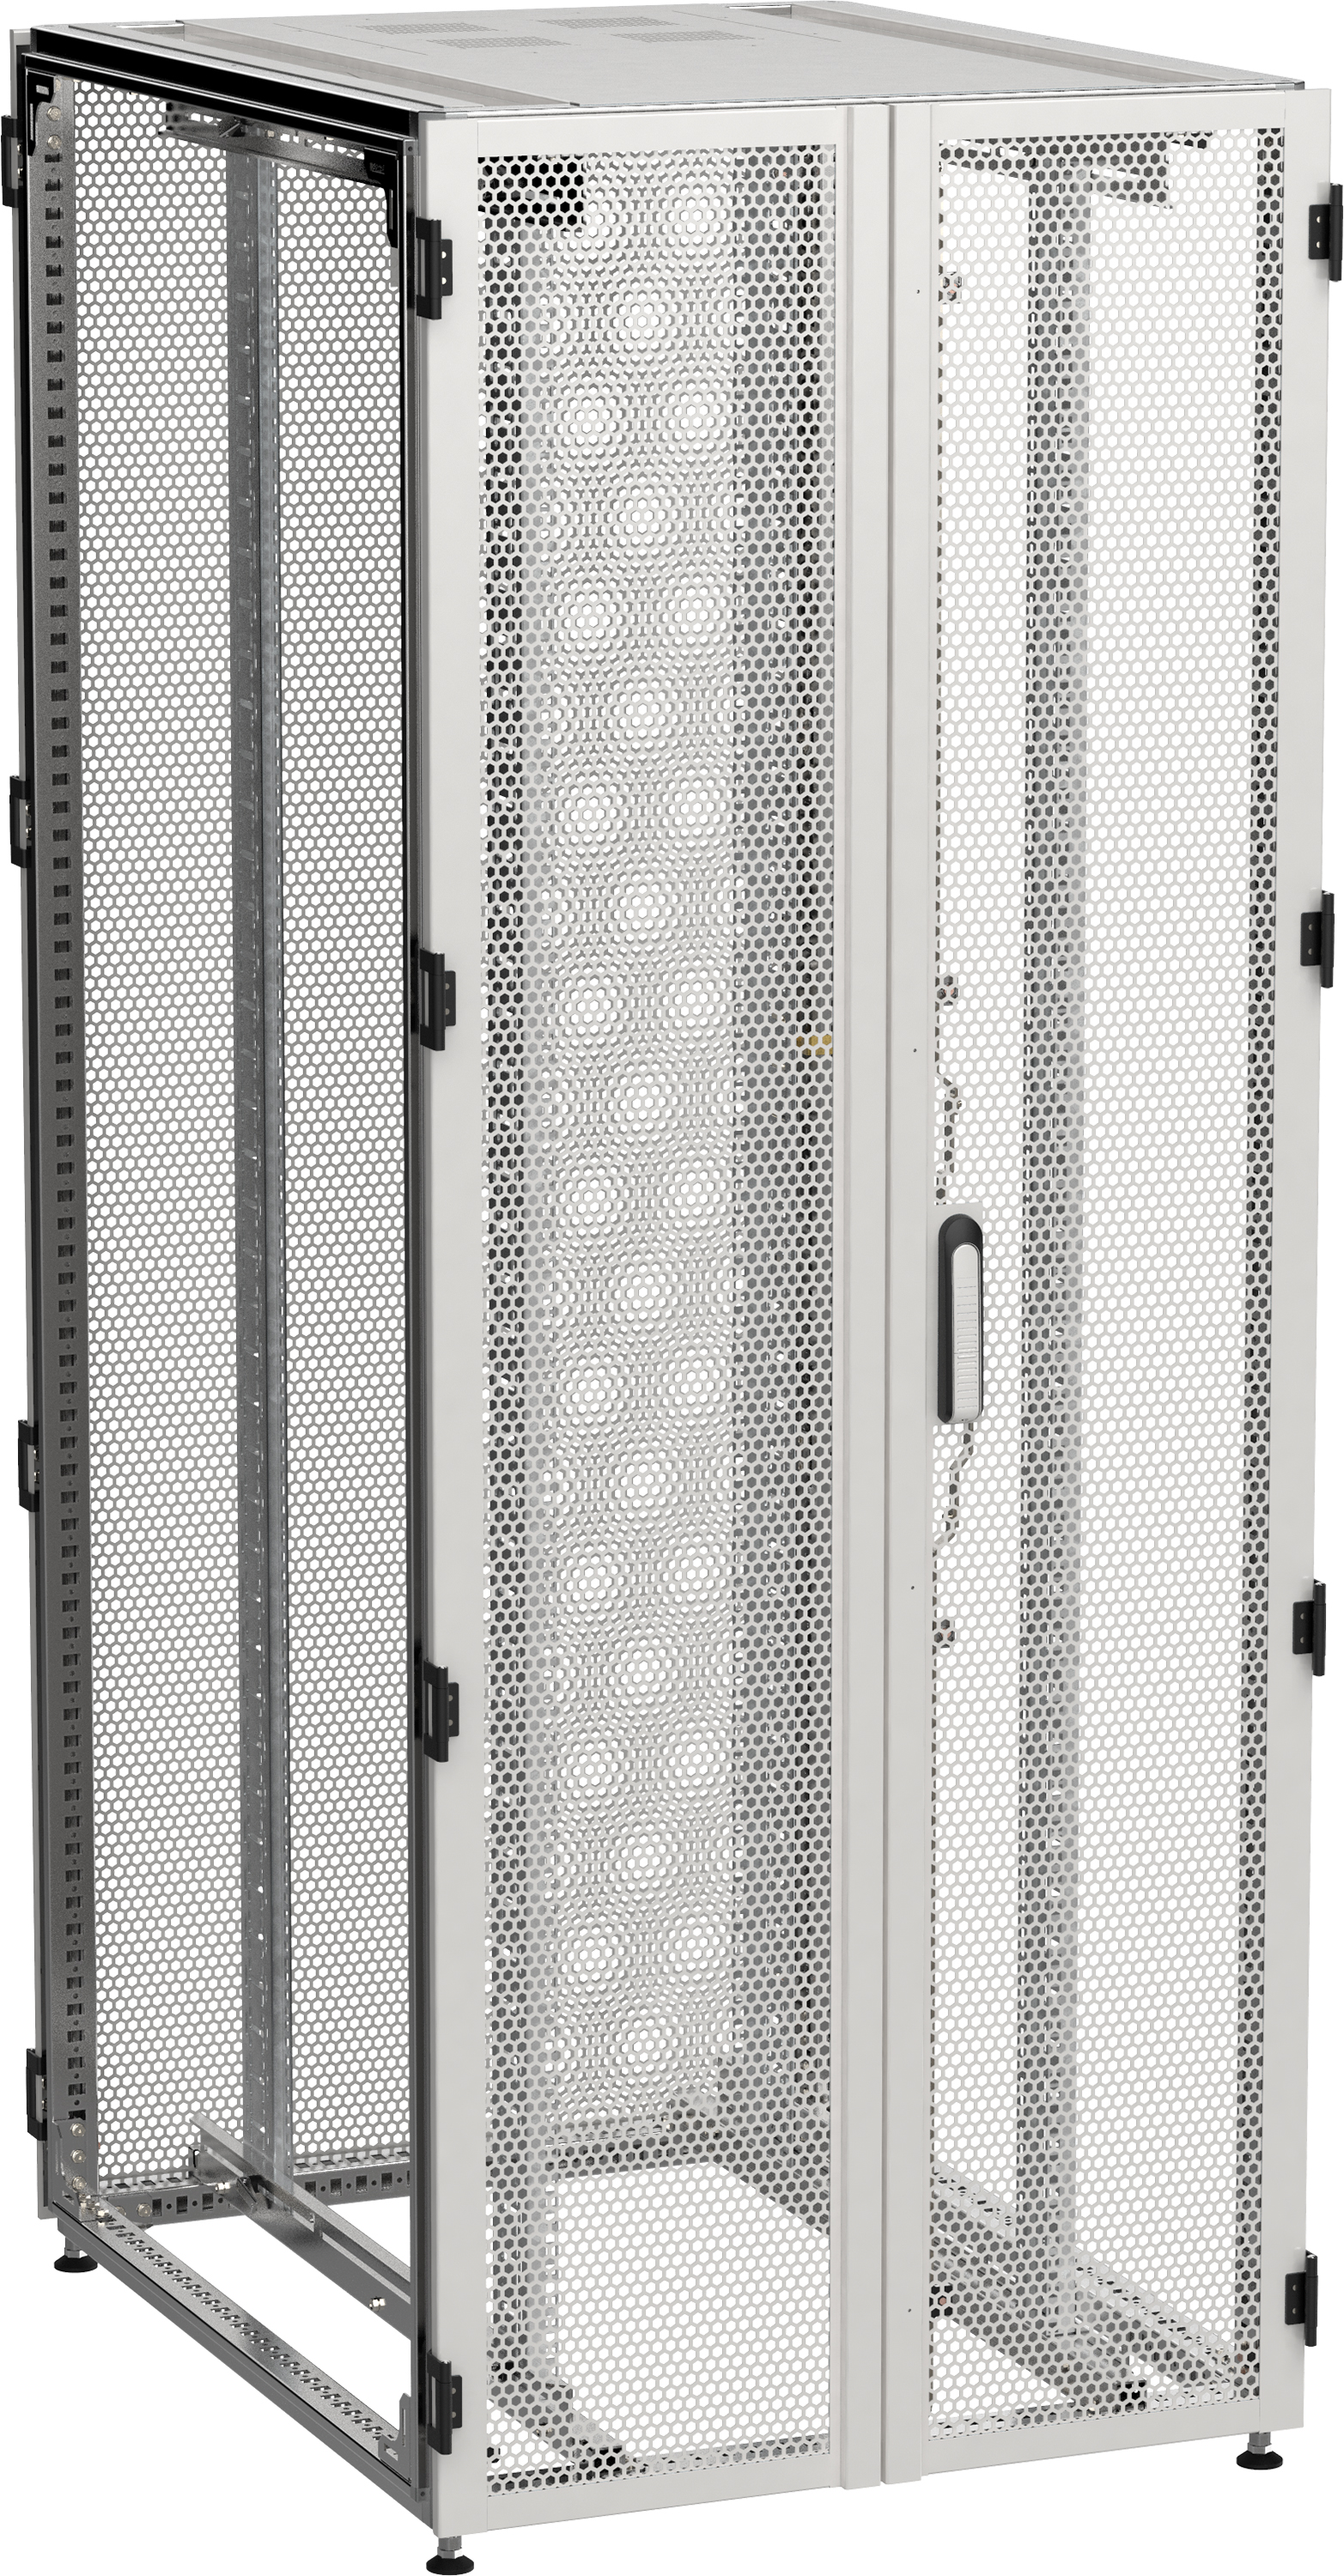 ITK by ZPAS Шкаф серверный 19" 47U 800х1200мм двухстворчатые перфорированные двери серый РФ